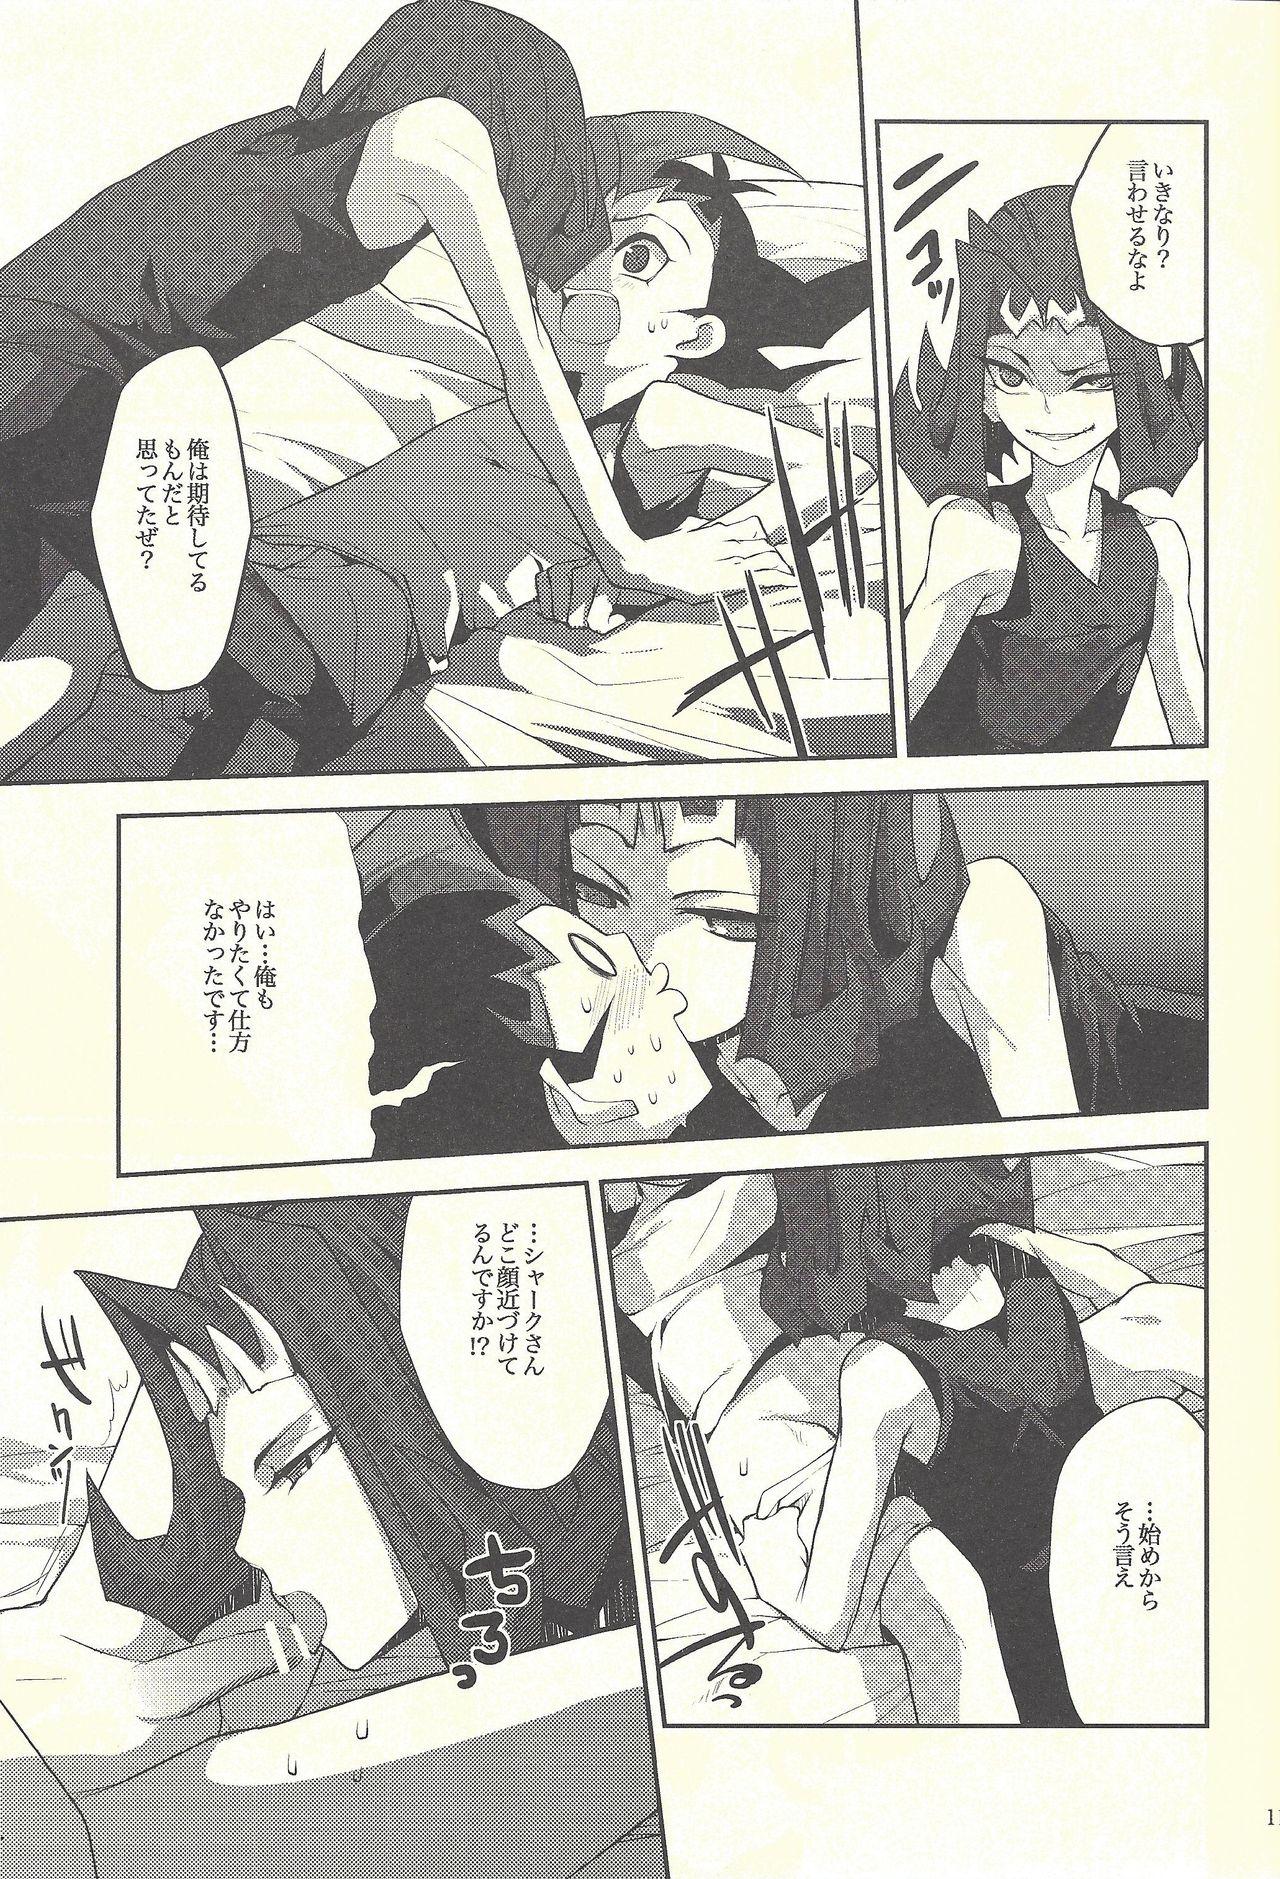 Hot Women Having Sex Boku-tachi no daishippai - Yu gi oh zexal Juicy - Page 10